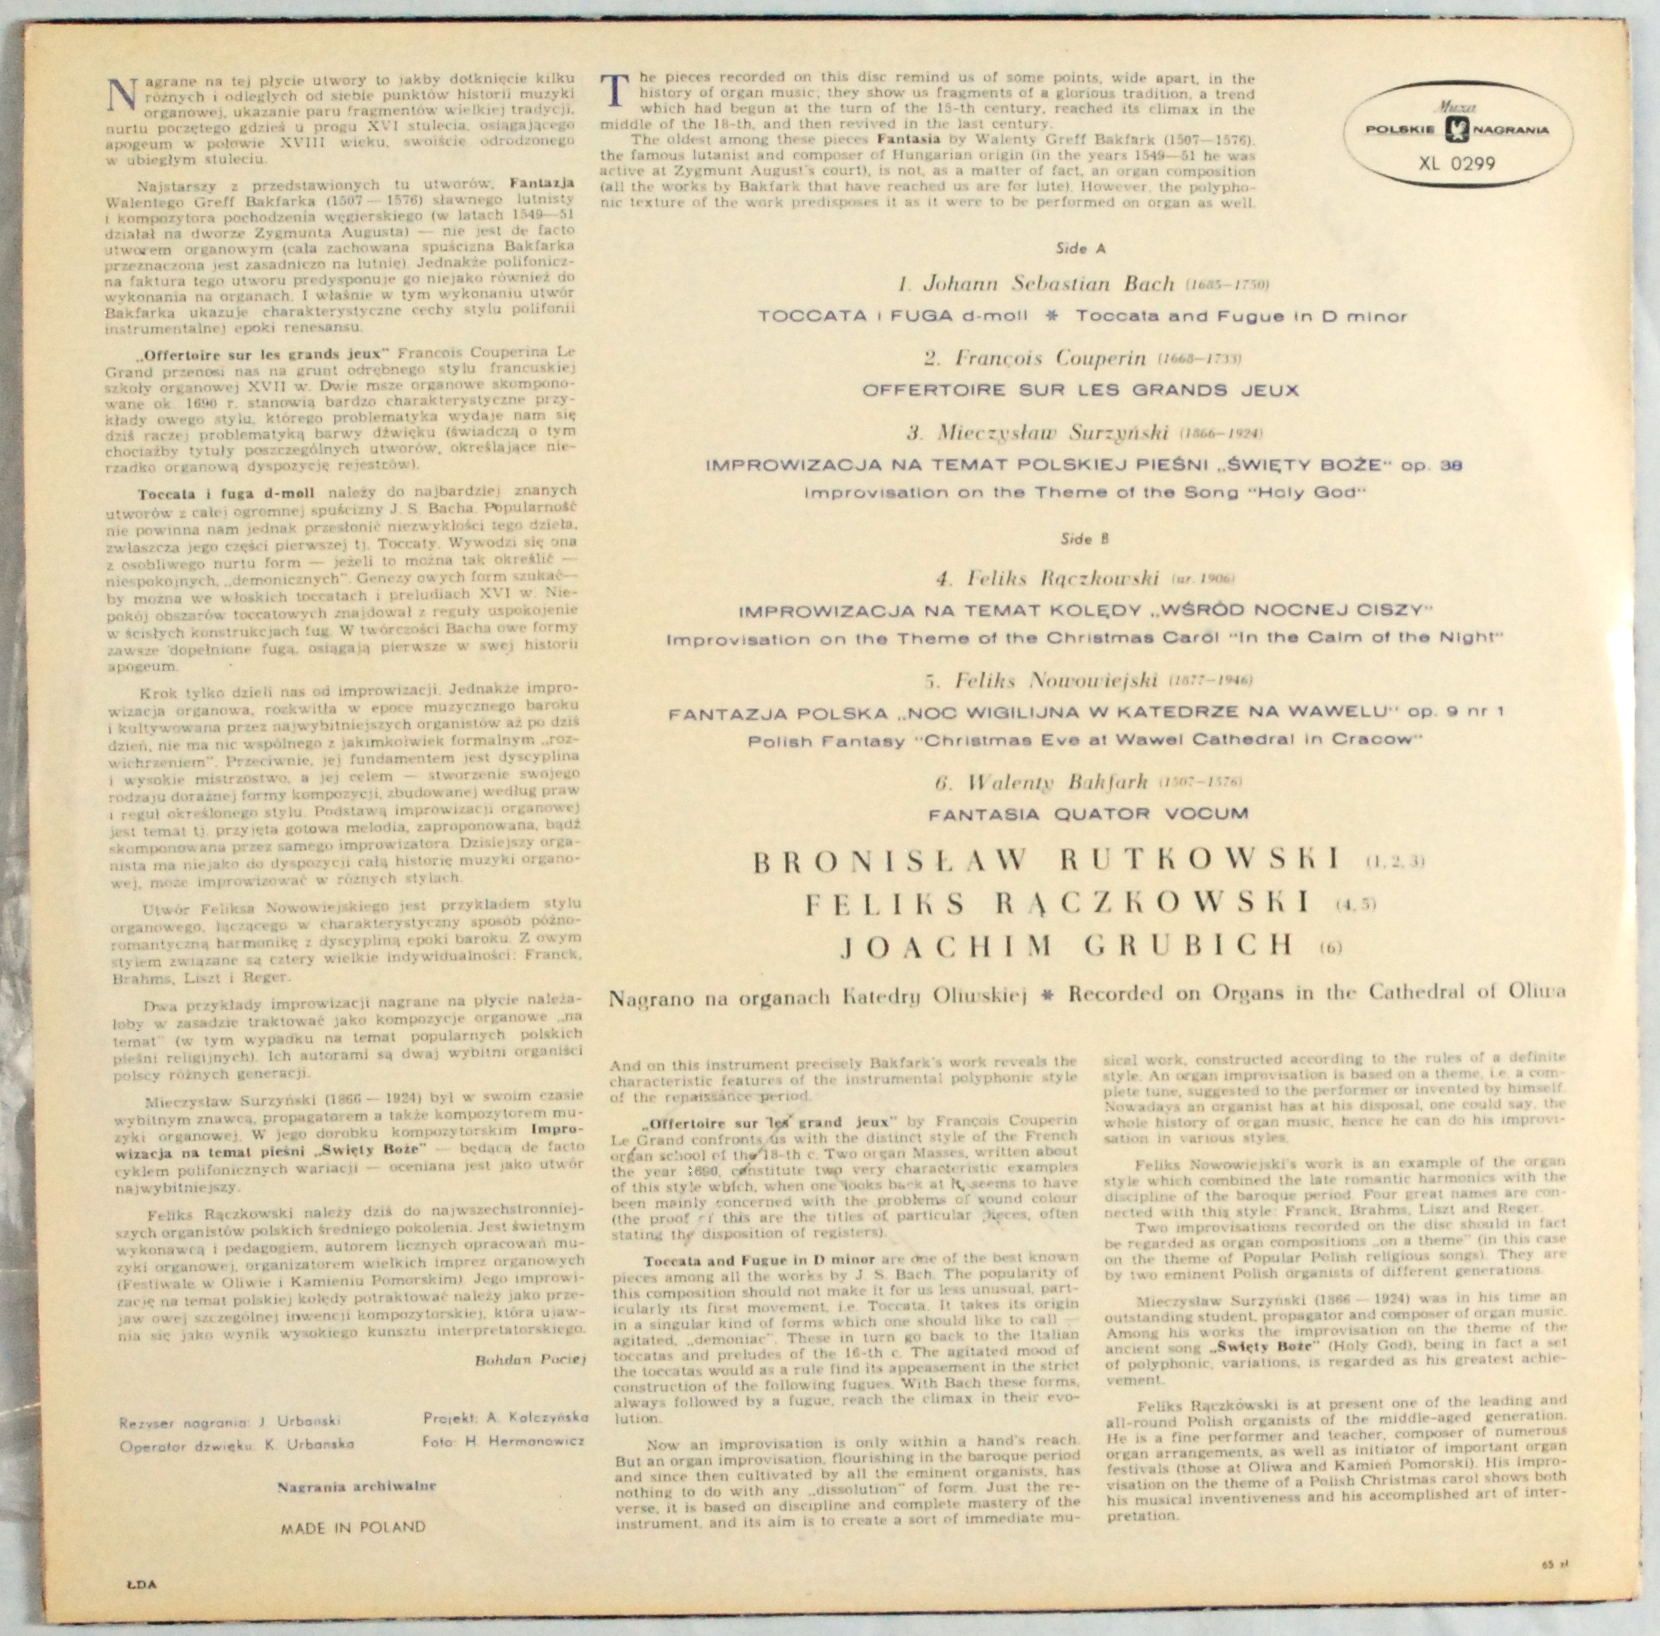 Rutkowski, Rączkowski, Grubich - Organ Music